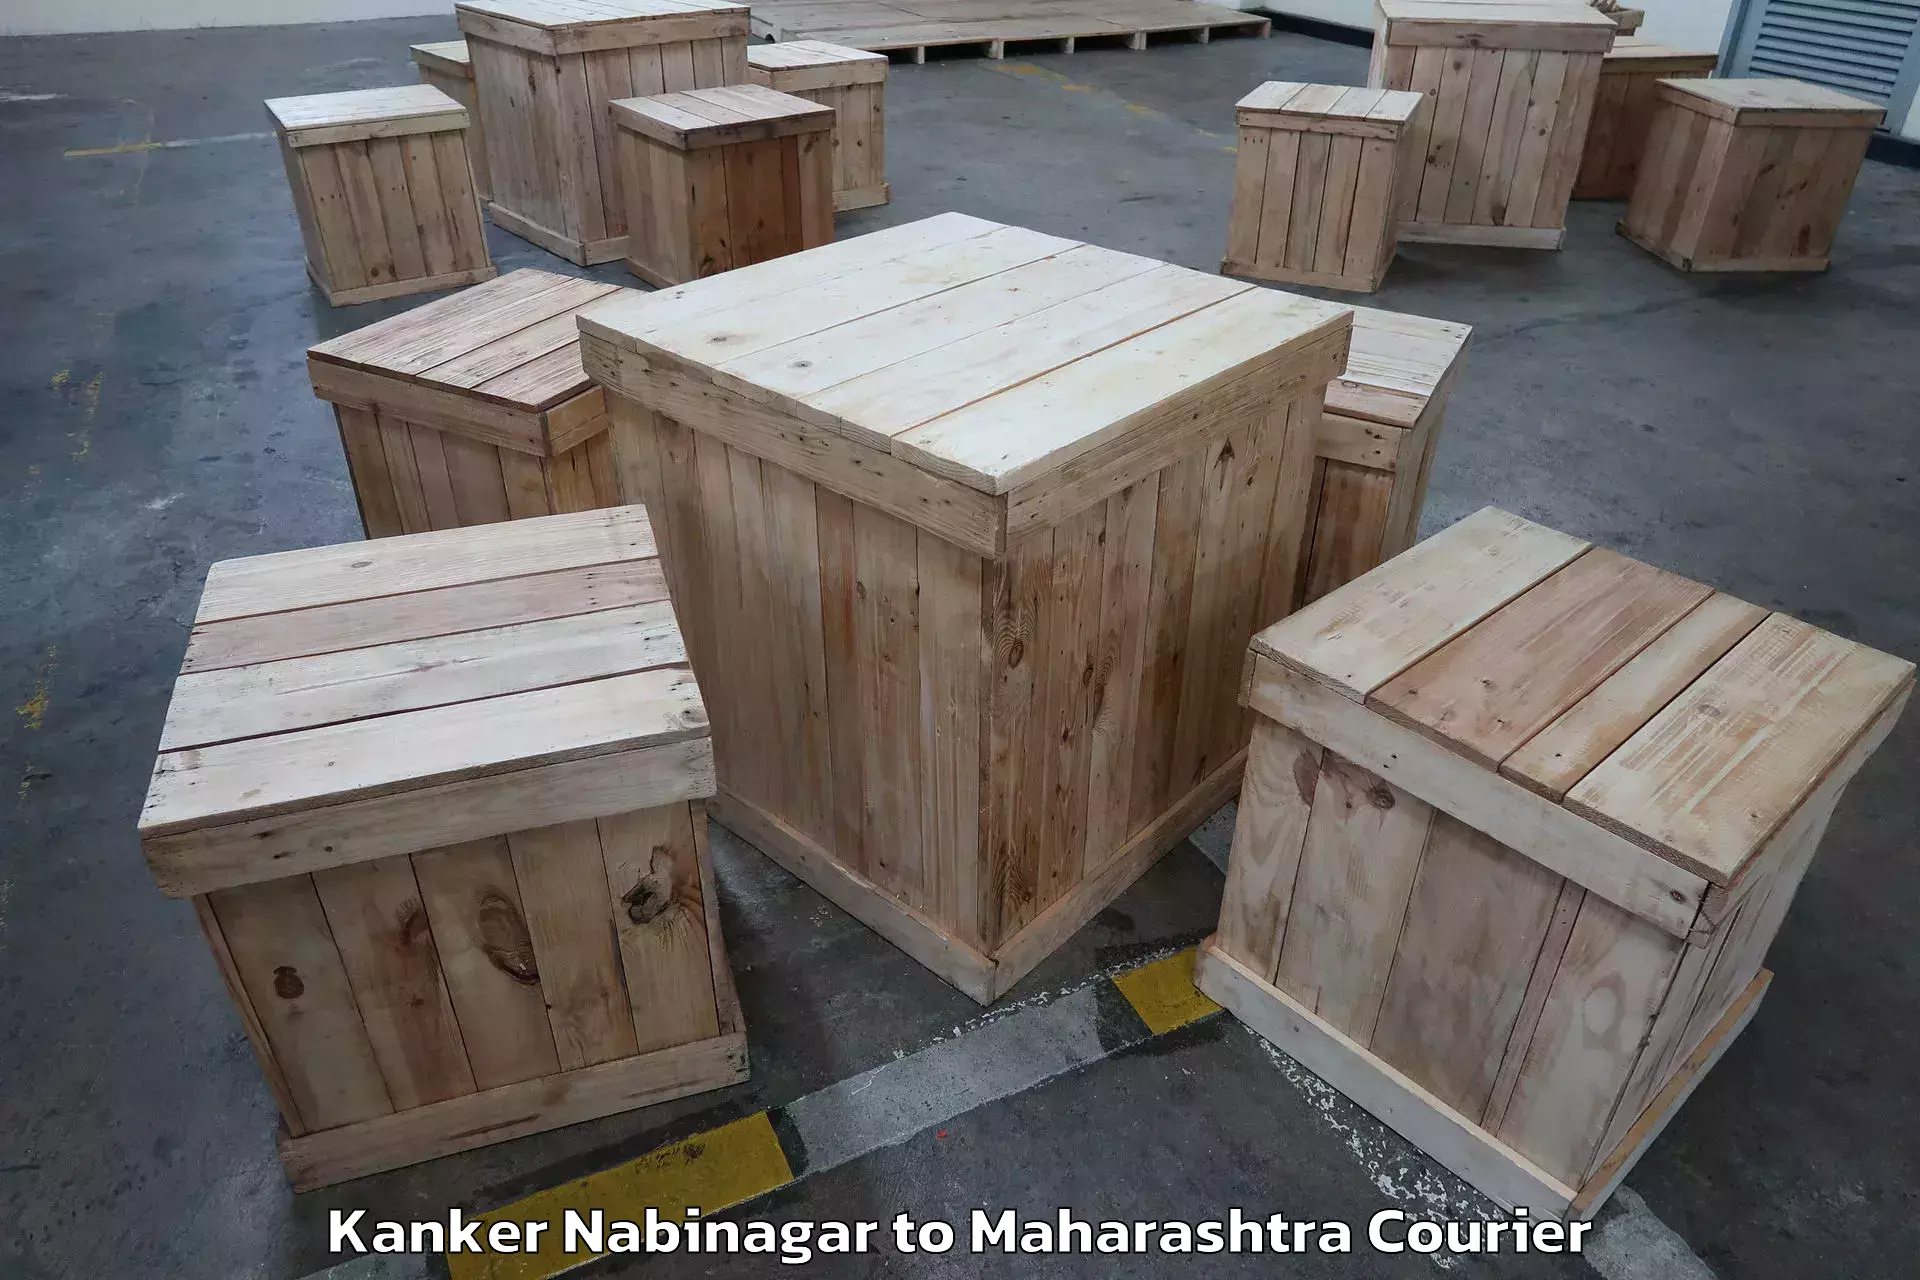 Reliable furniture transport Kanker Nabinagar to IIT Mumbai